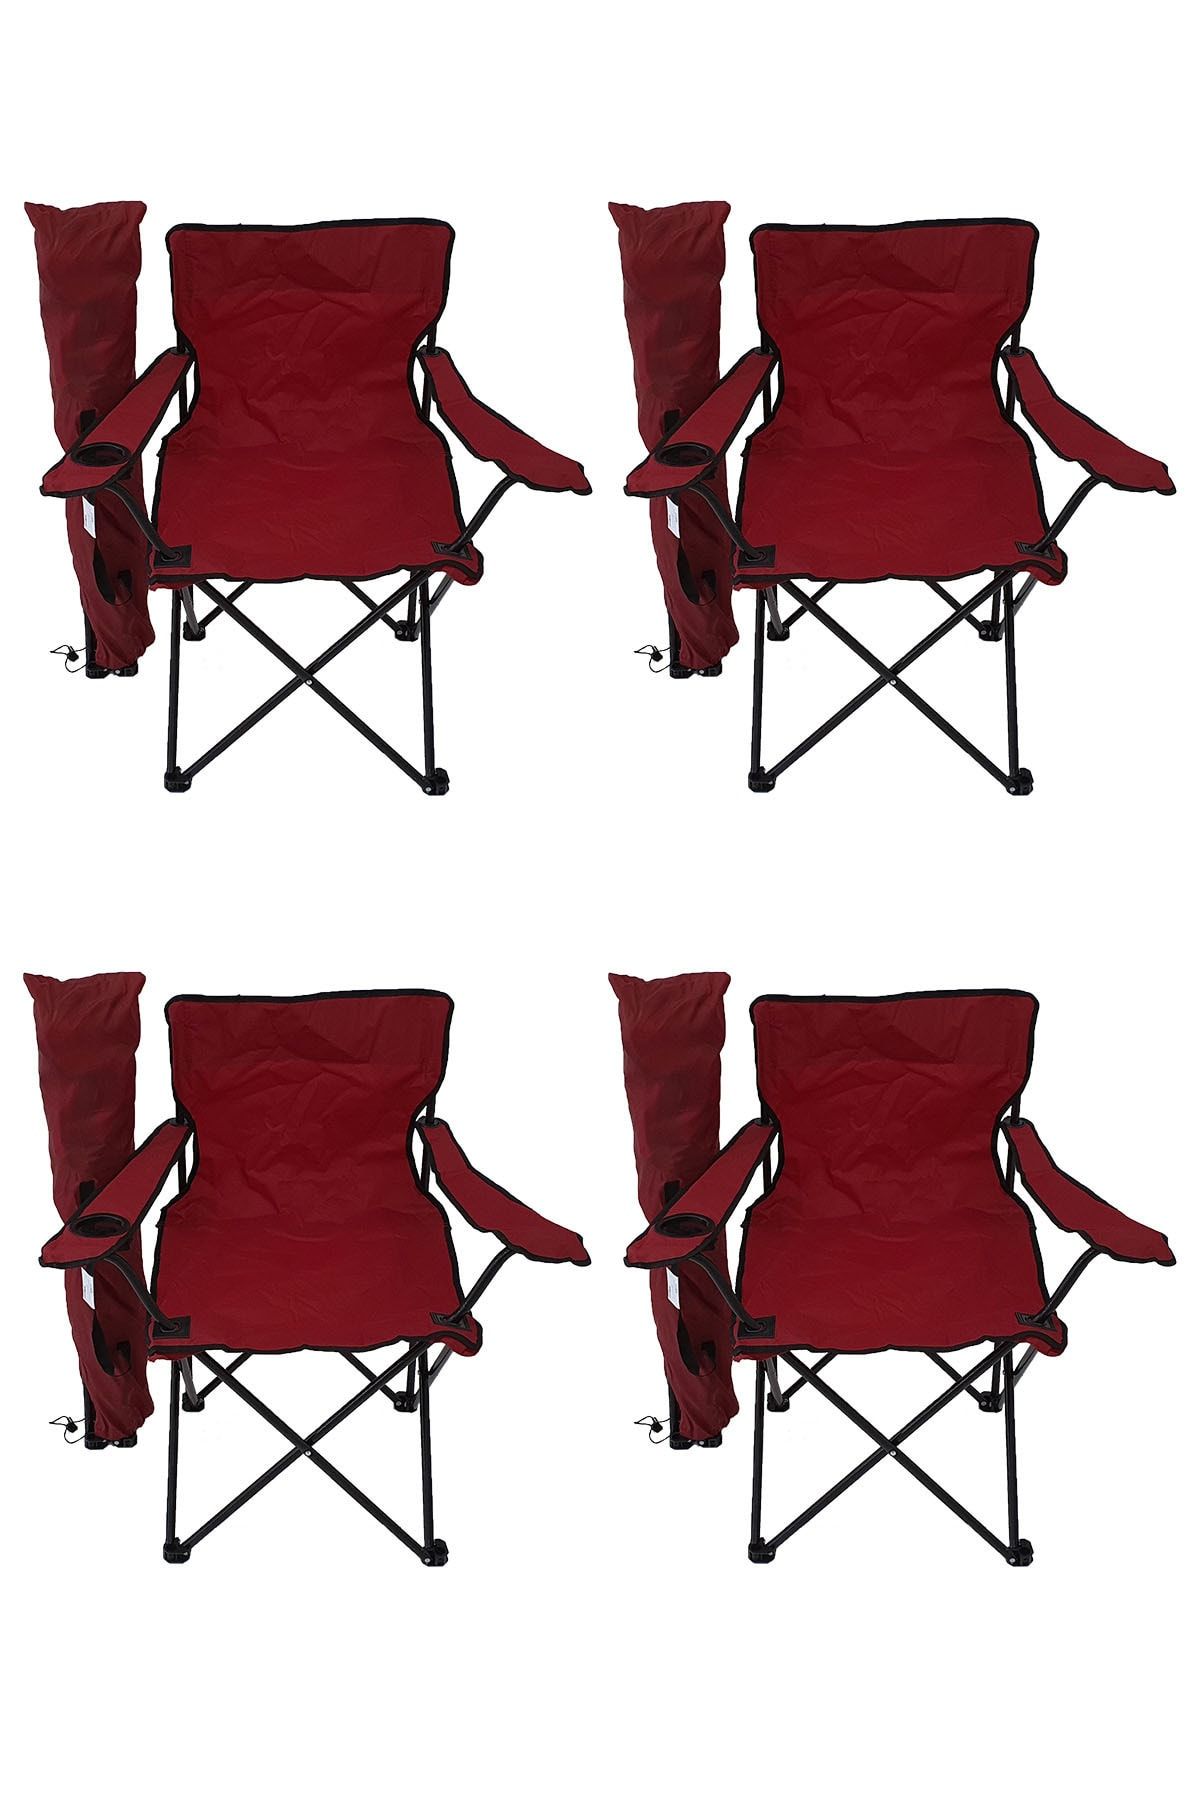 Bofigo 4'lü Kamp Sandalyesi Piknik Sandalyesi Katlanır Sandalye Taşıma Çantalı Kamp Sandalye Kırmızı